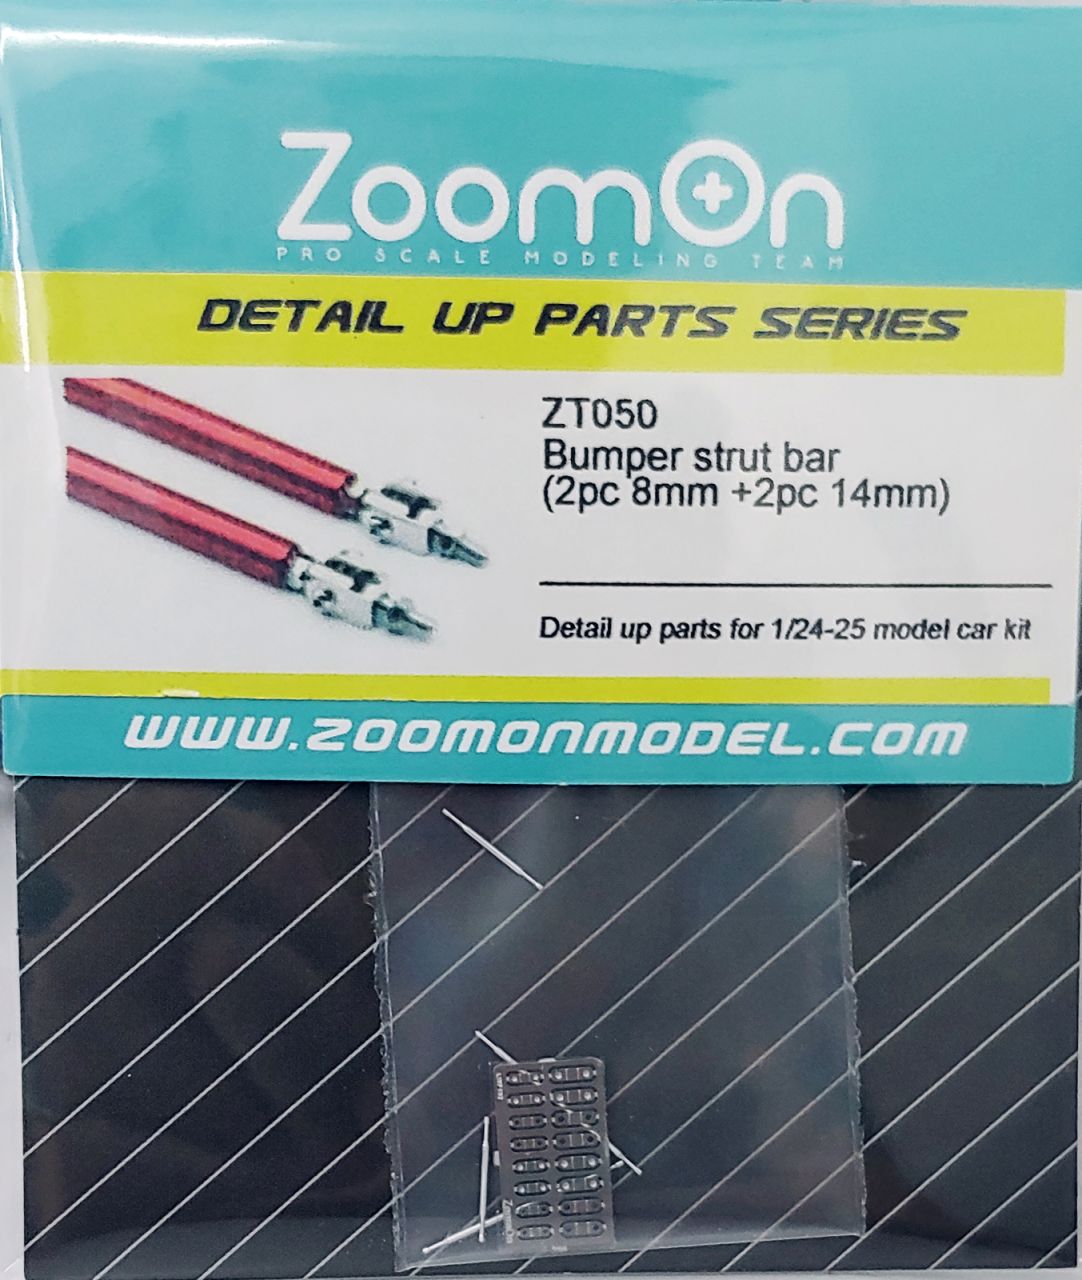 ZoomOn ZT050 Bumper strut bar (2pc 8mm +2pc 14mm)